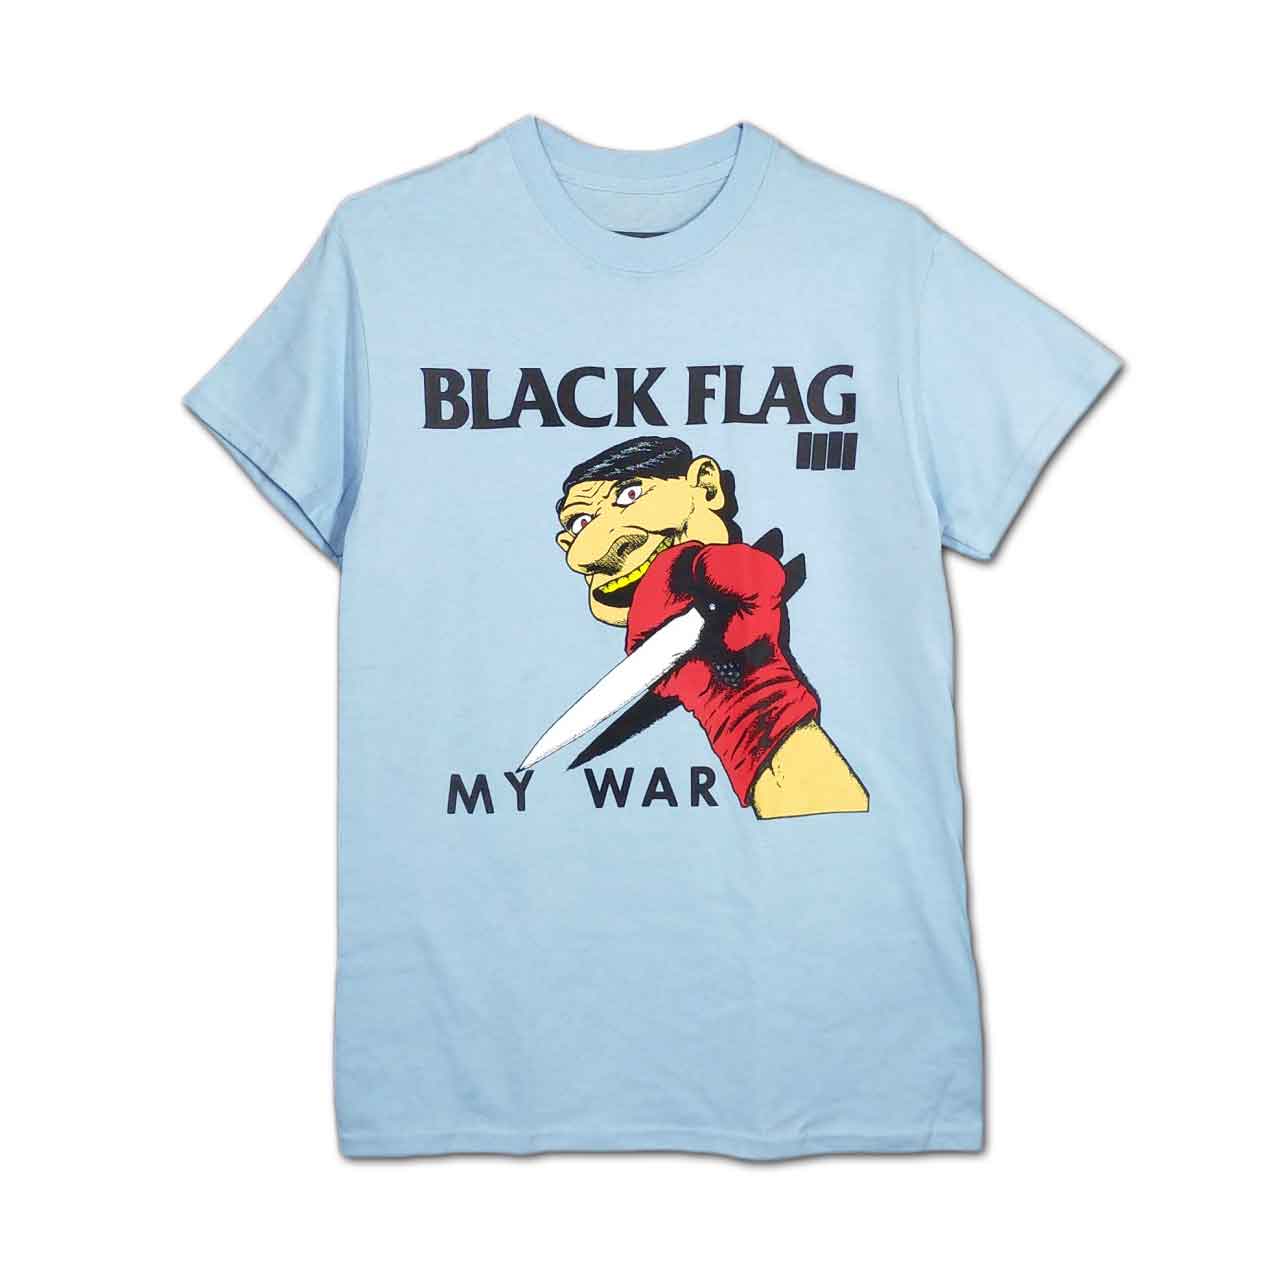 Black Flag バンドTシャツ ブラック・フラッグ My War - バンドTシャツ 